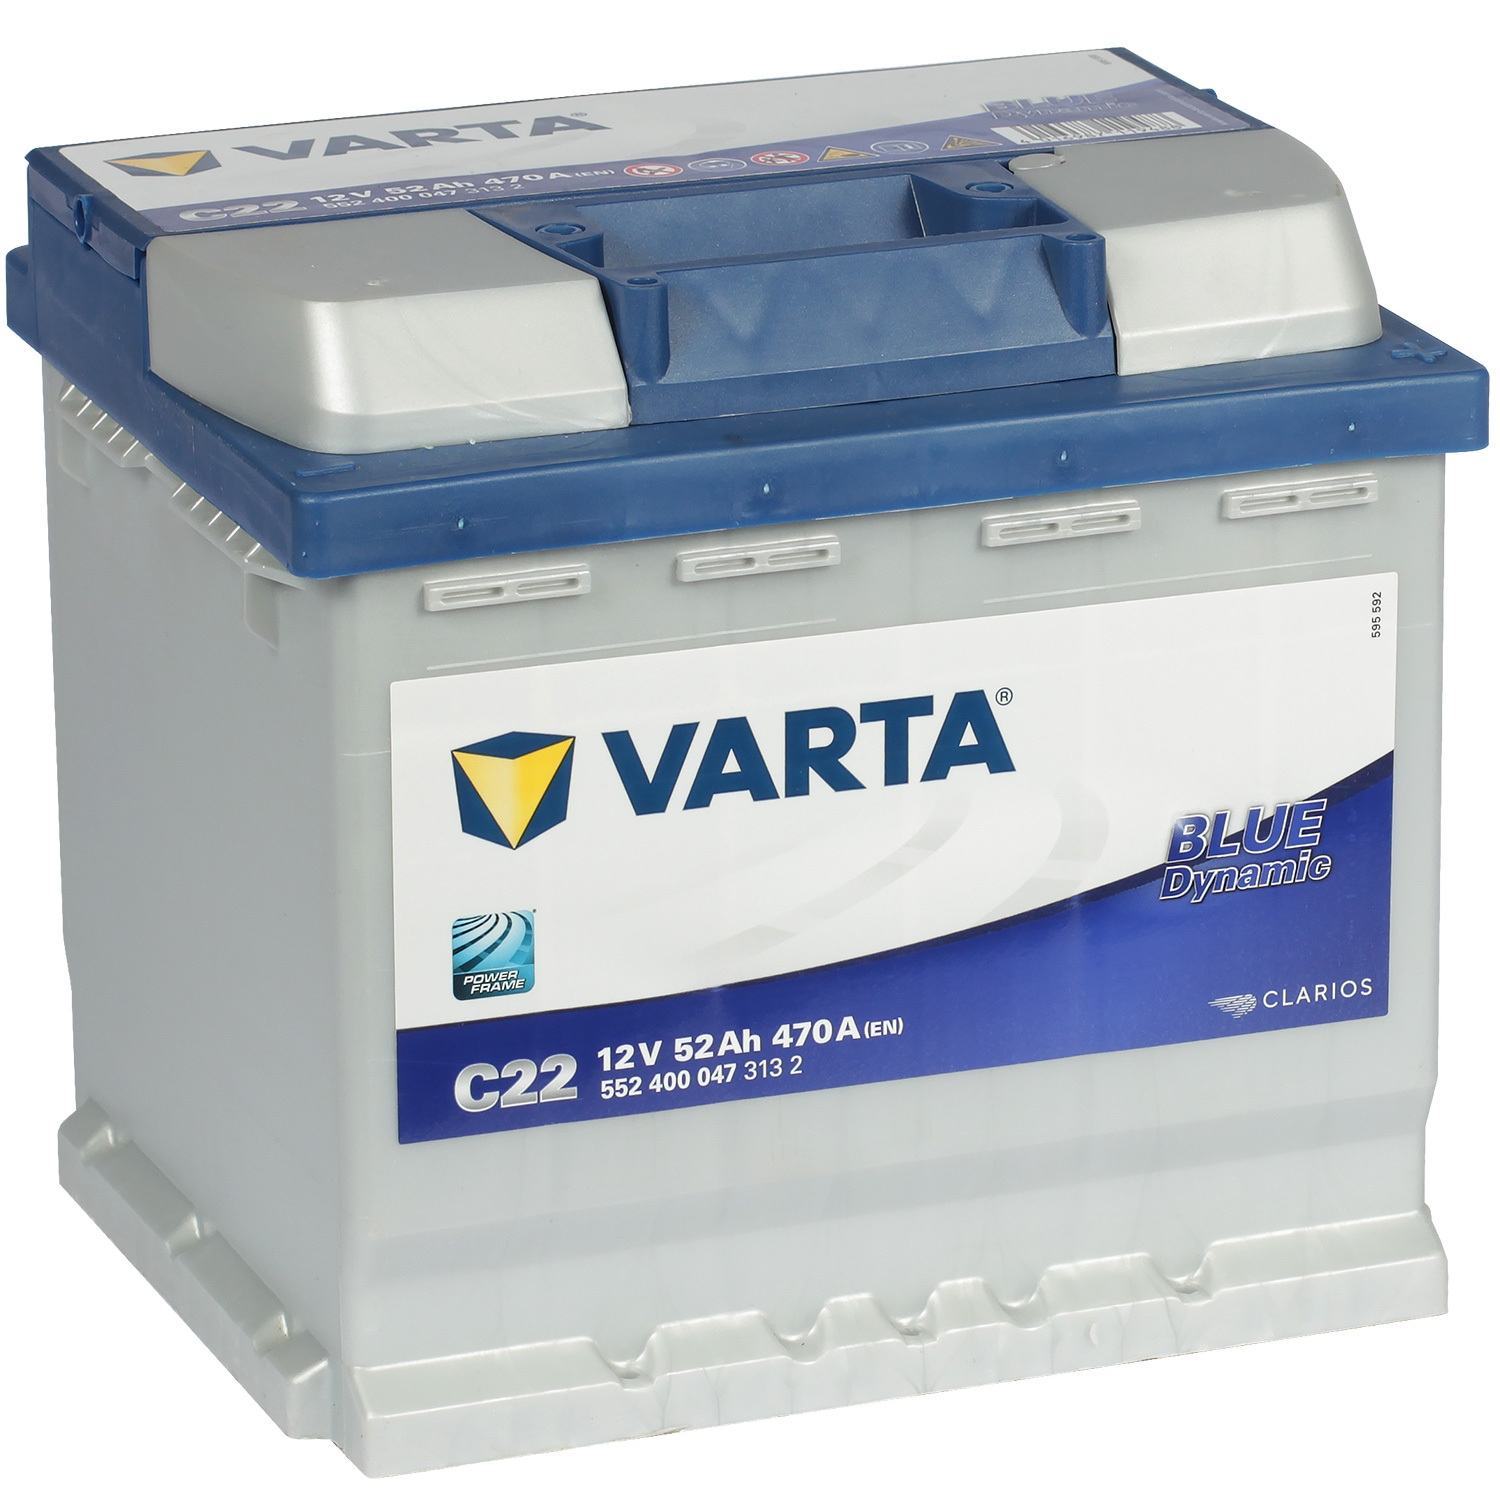 Varta Автомобильный аккумулятор Varta Blue Dynamic C22 52 Ач обратная полярность L1 varta автомобильный аккумулятор varta blue dynamic b34 45 ач прямая полярность b24r